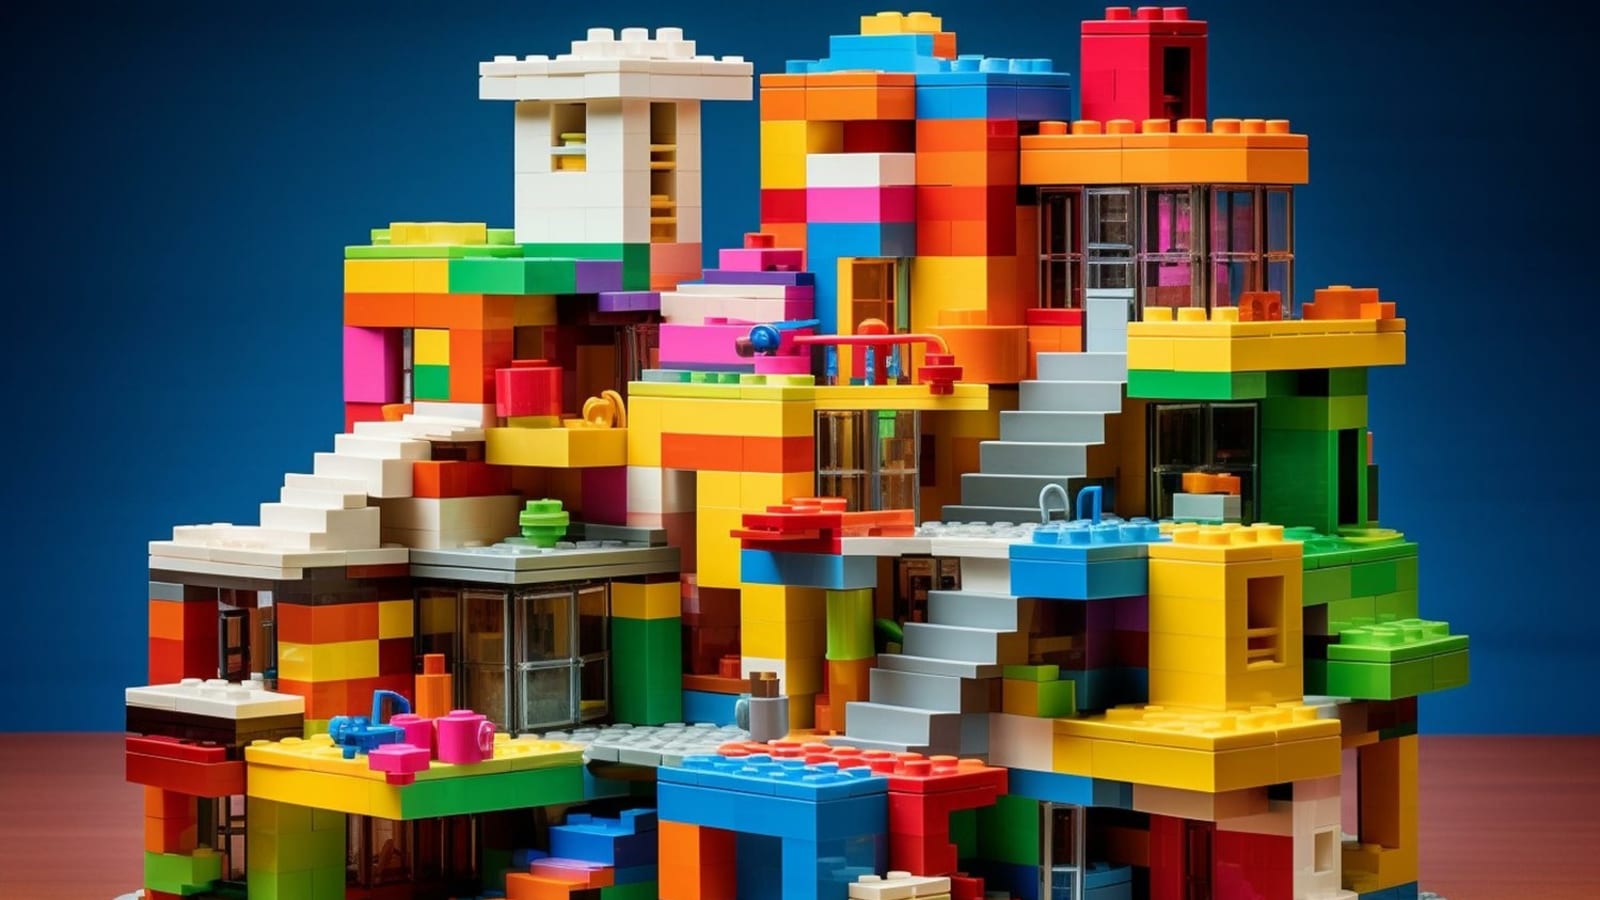 Living in LEGO®: Designing Neighborhoods